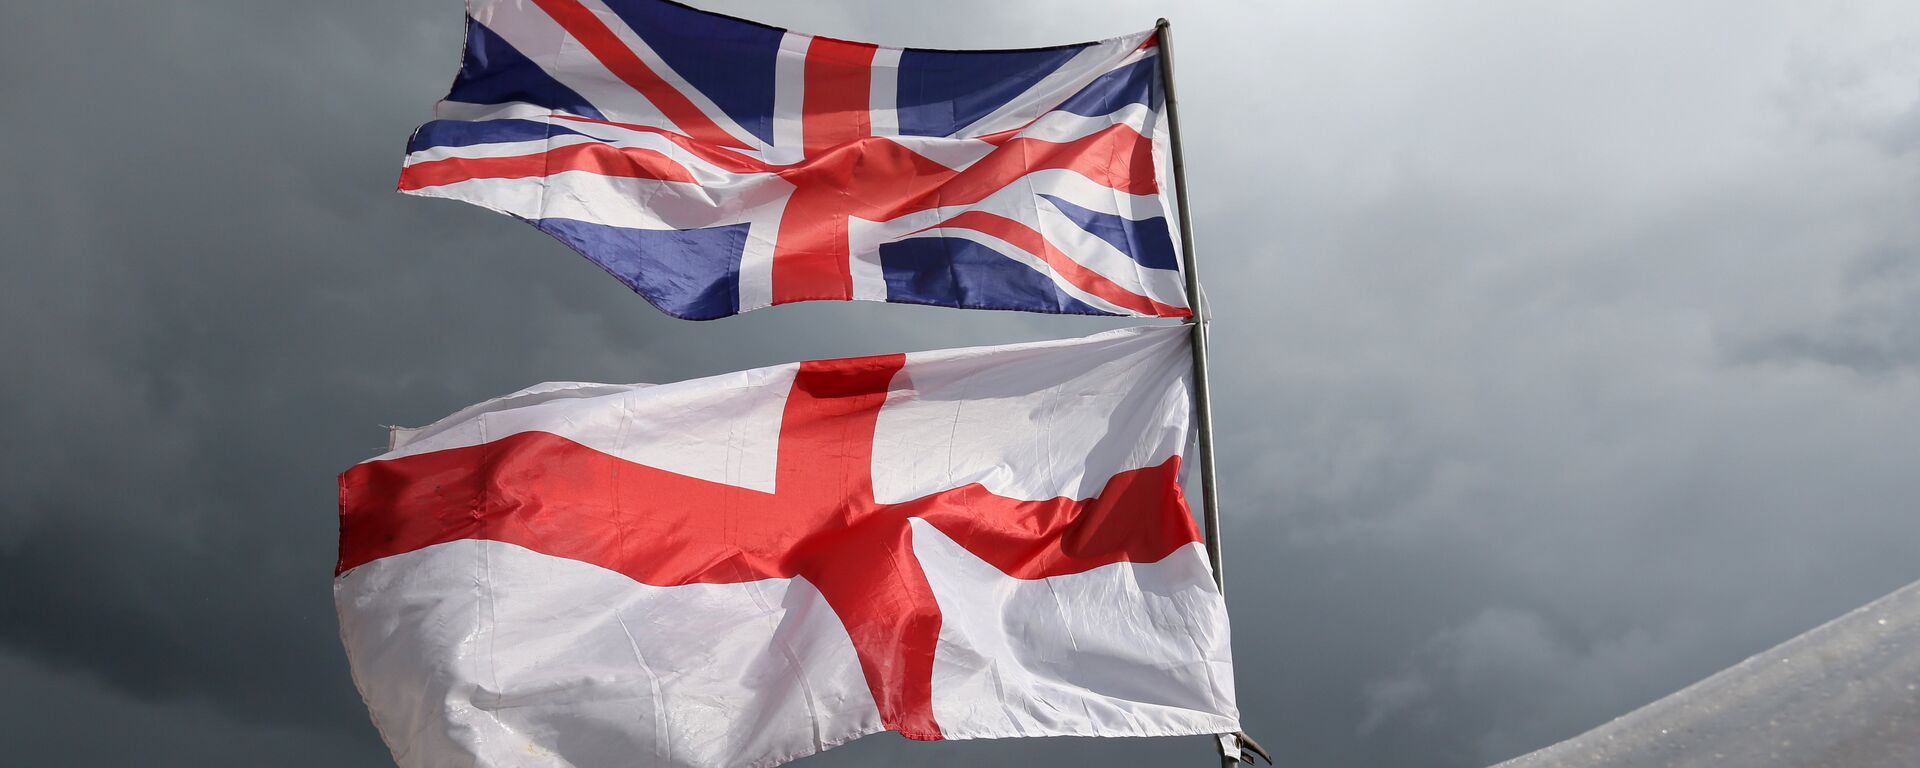 Las banderas del Reino Unido y Irlanda del Norte - Sputnik Mundo, 1920, 09.02.2021